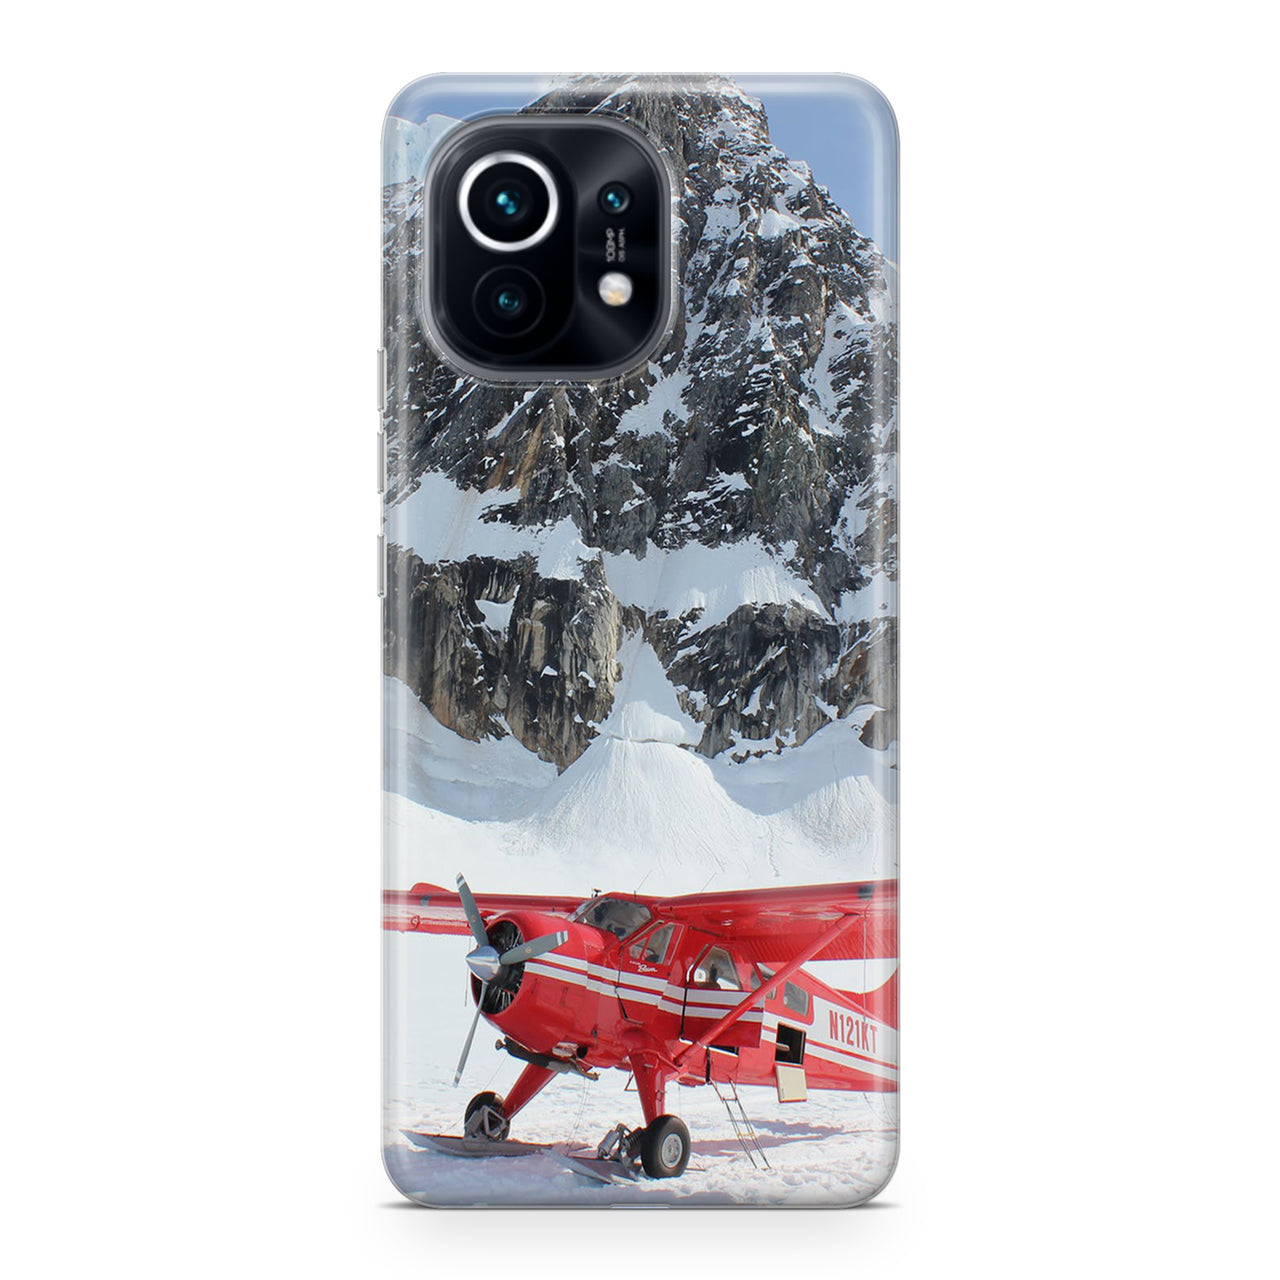 Amazing Snow Airplane Designed Xiaomi Cases